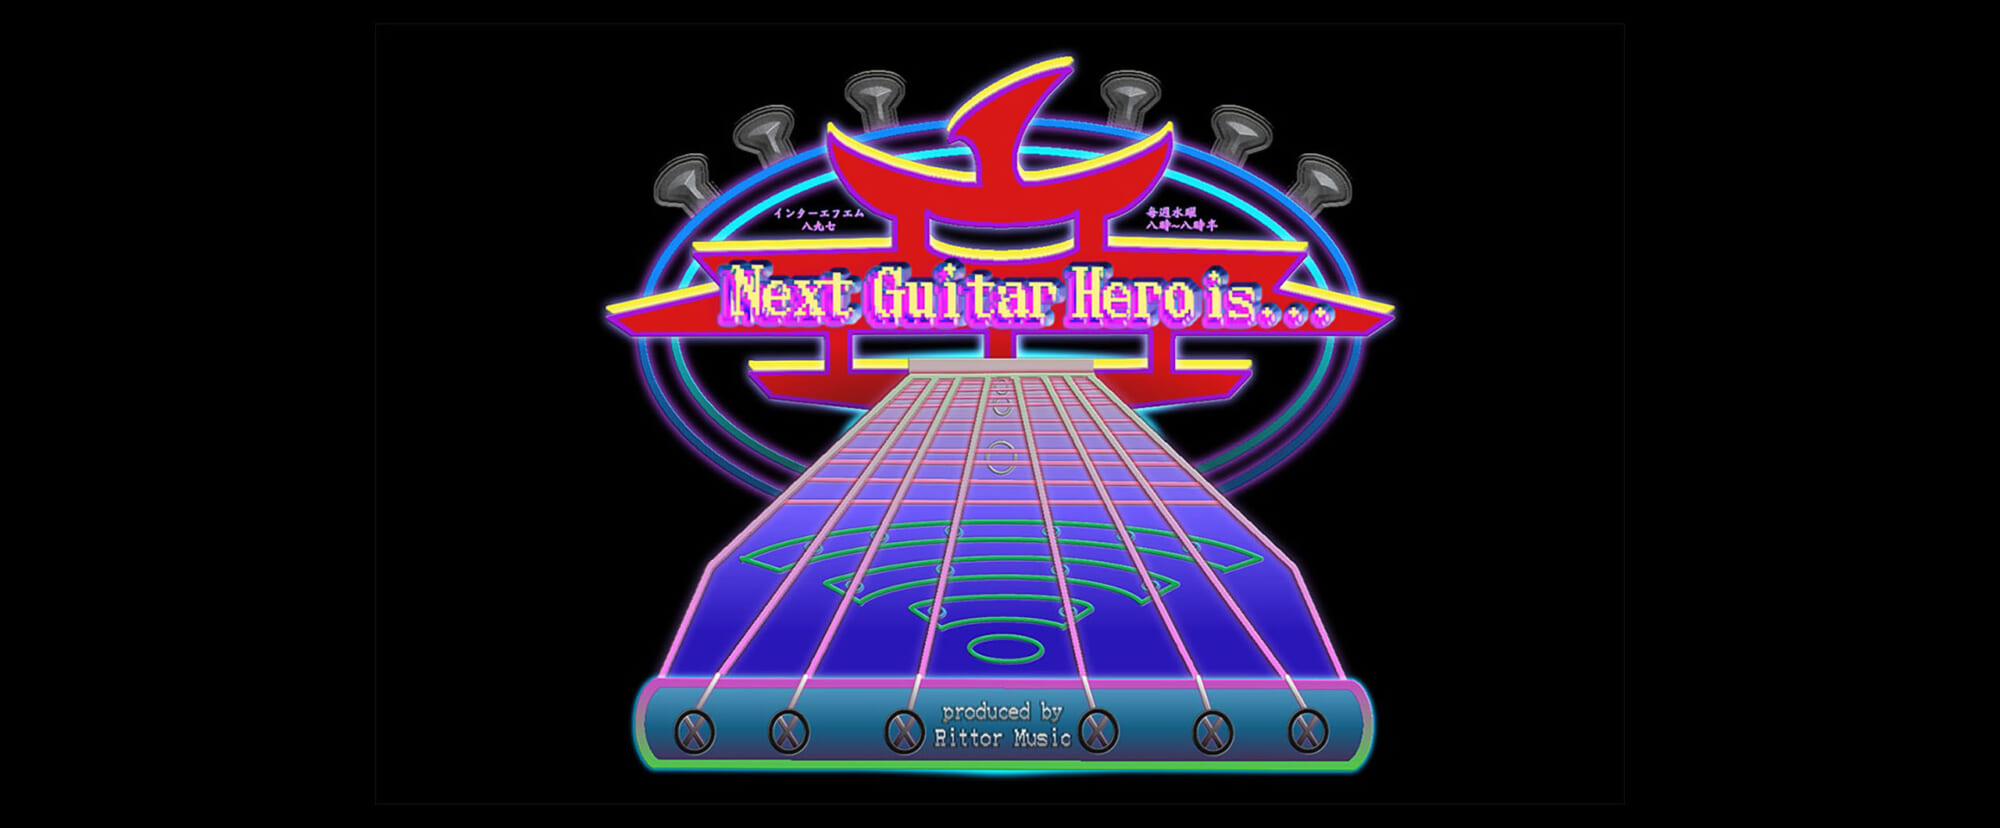 小笹大輔と有賀教平が語る「マイ・ギター・ヒーローと次世代のギタリスト像」／『Next Guitar Hero is…』今週の放送内容